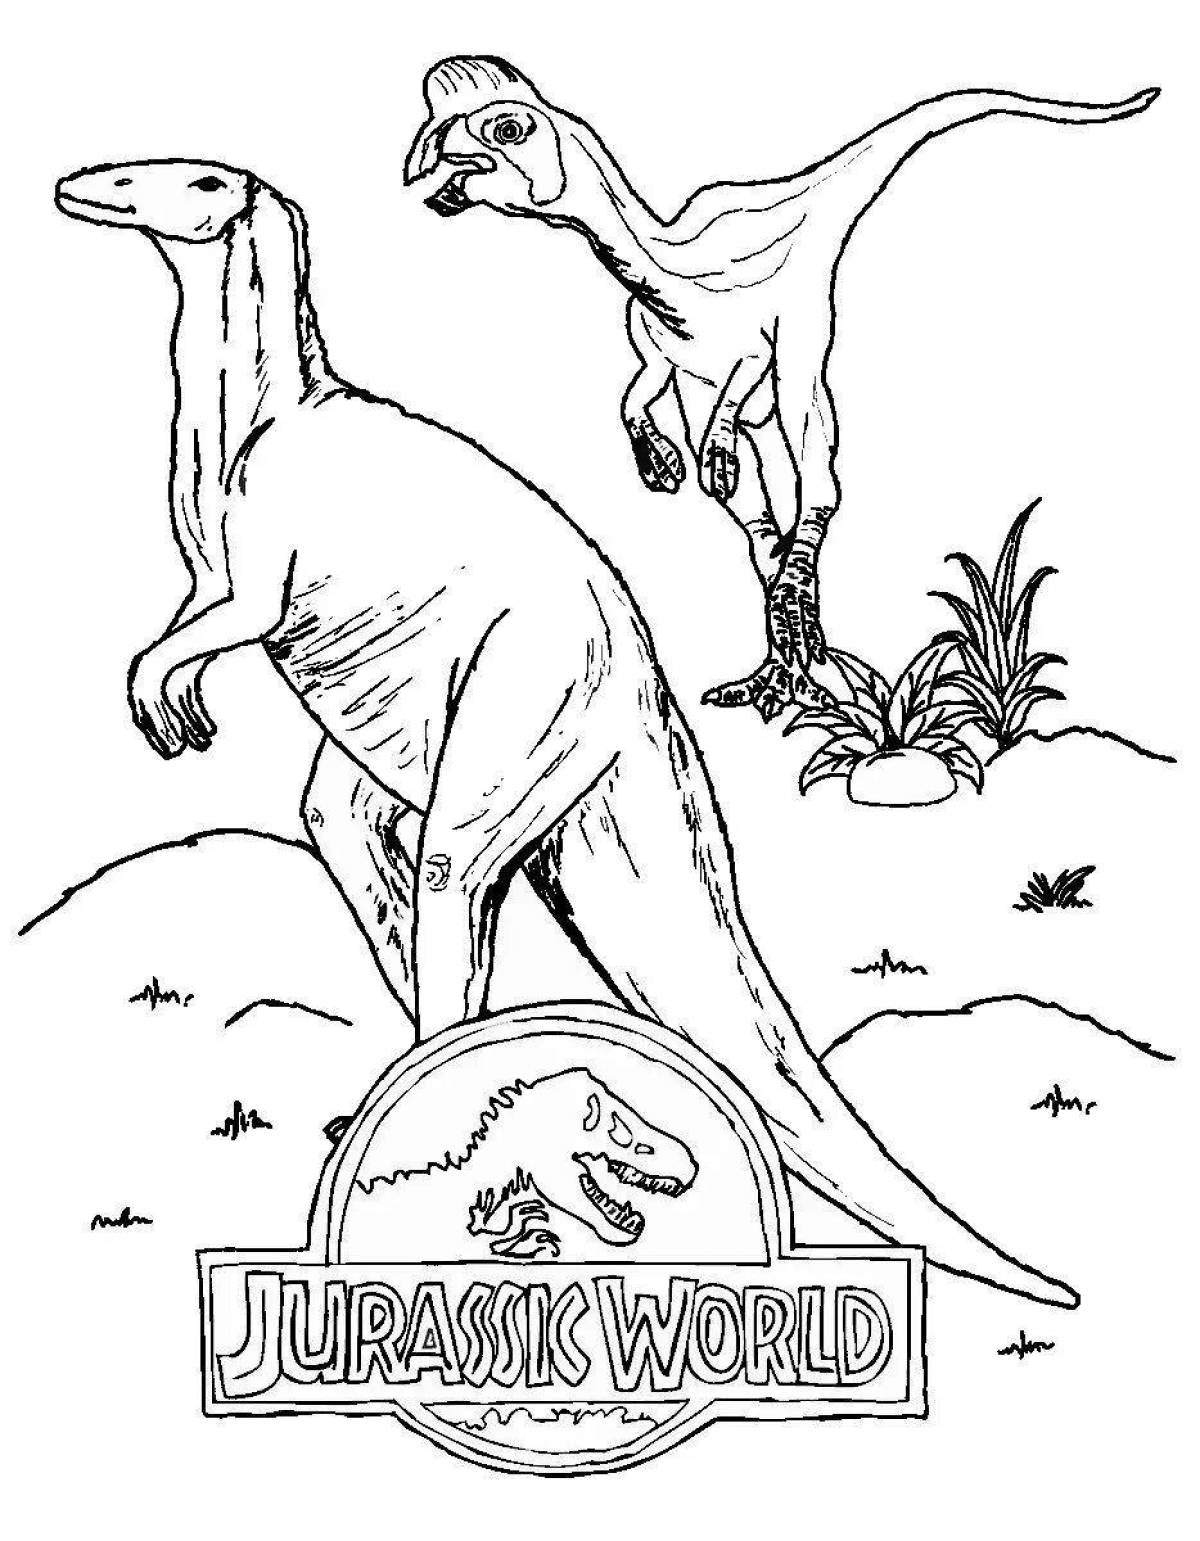 Динозавры парк юрского периода #16